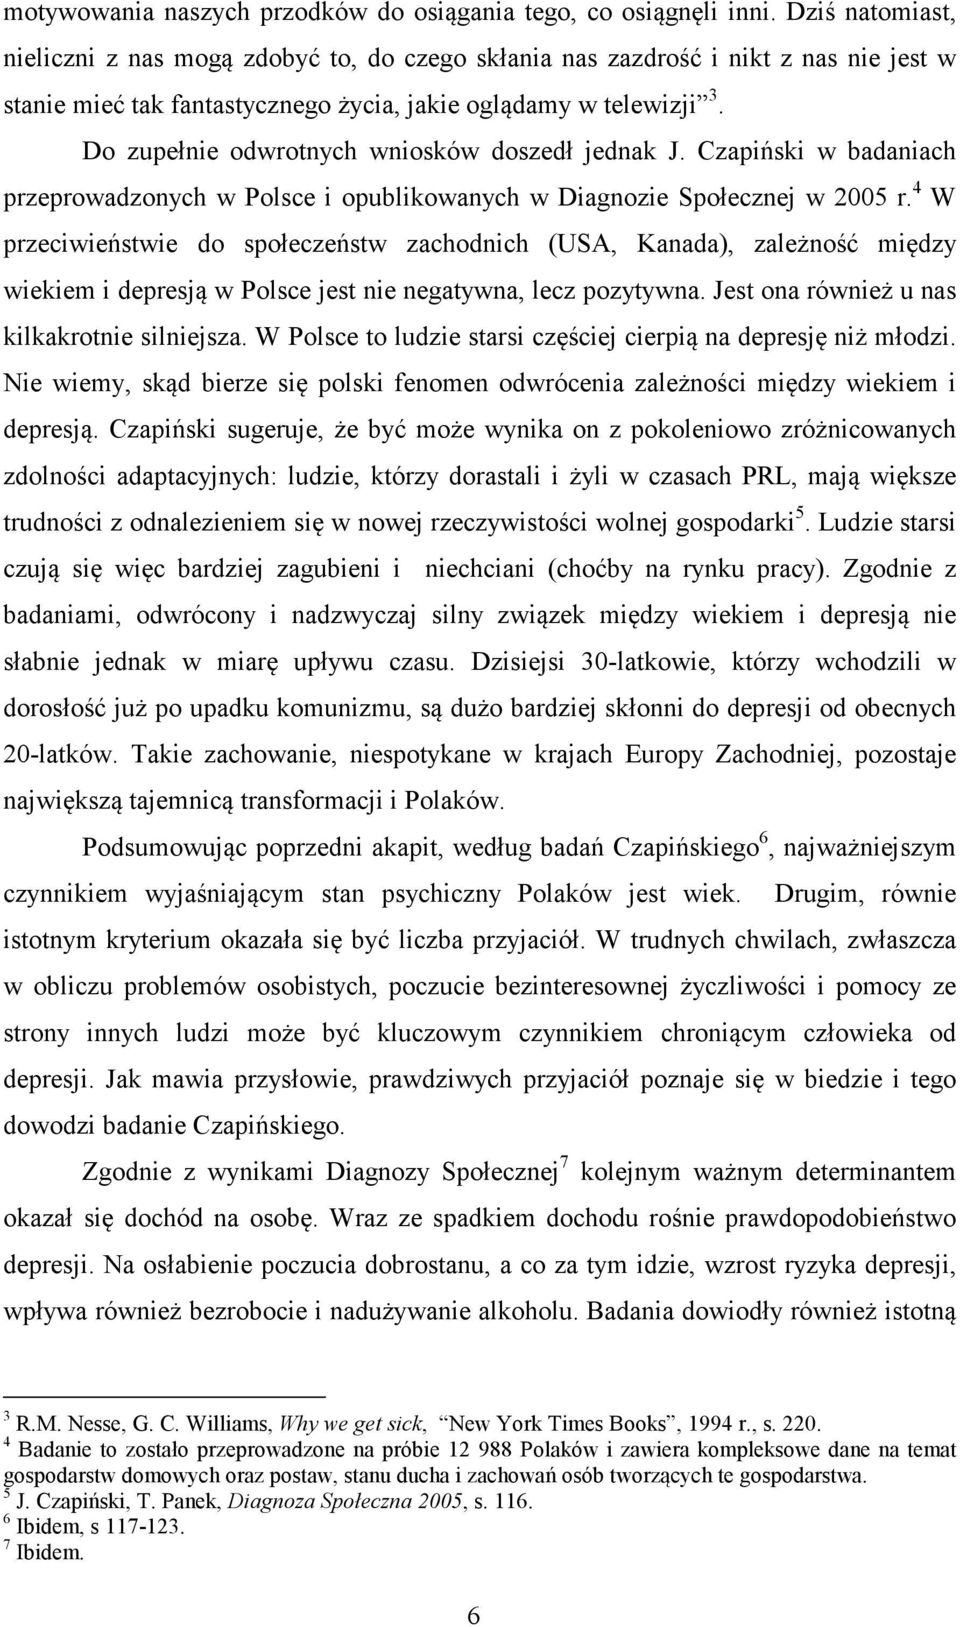 Do zupełnie odwrotnych wniosków doszedł jednak J. Czapiński w badaniach przeprowadzonych w Polsce i opublikowanych w Diagnozie Społecznej w 2005 r.